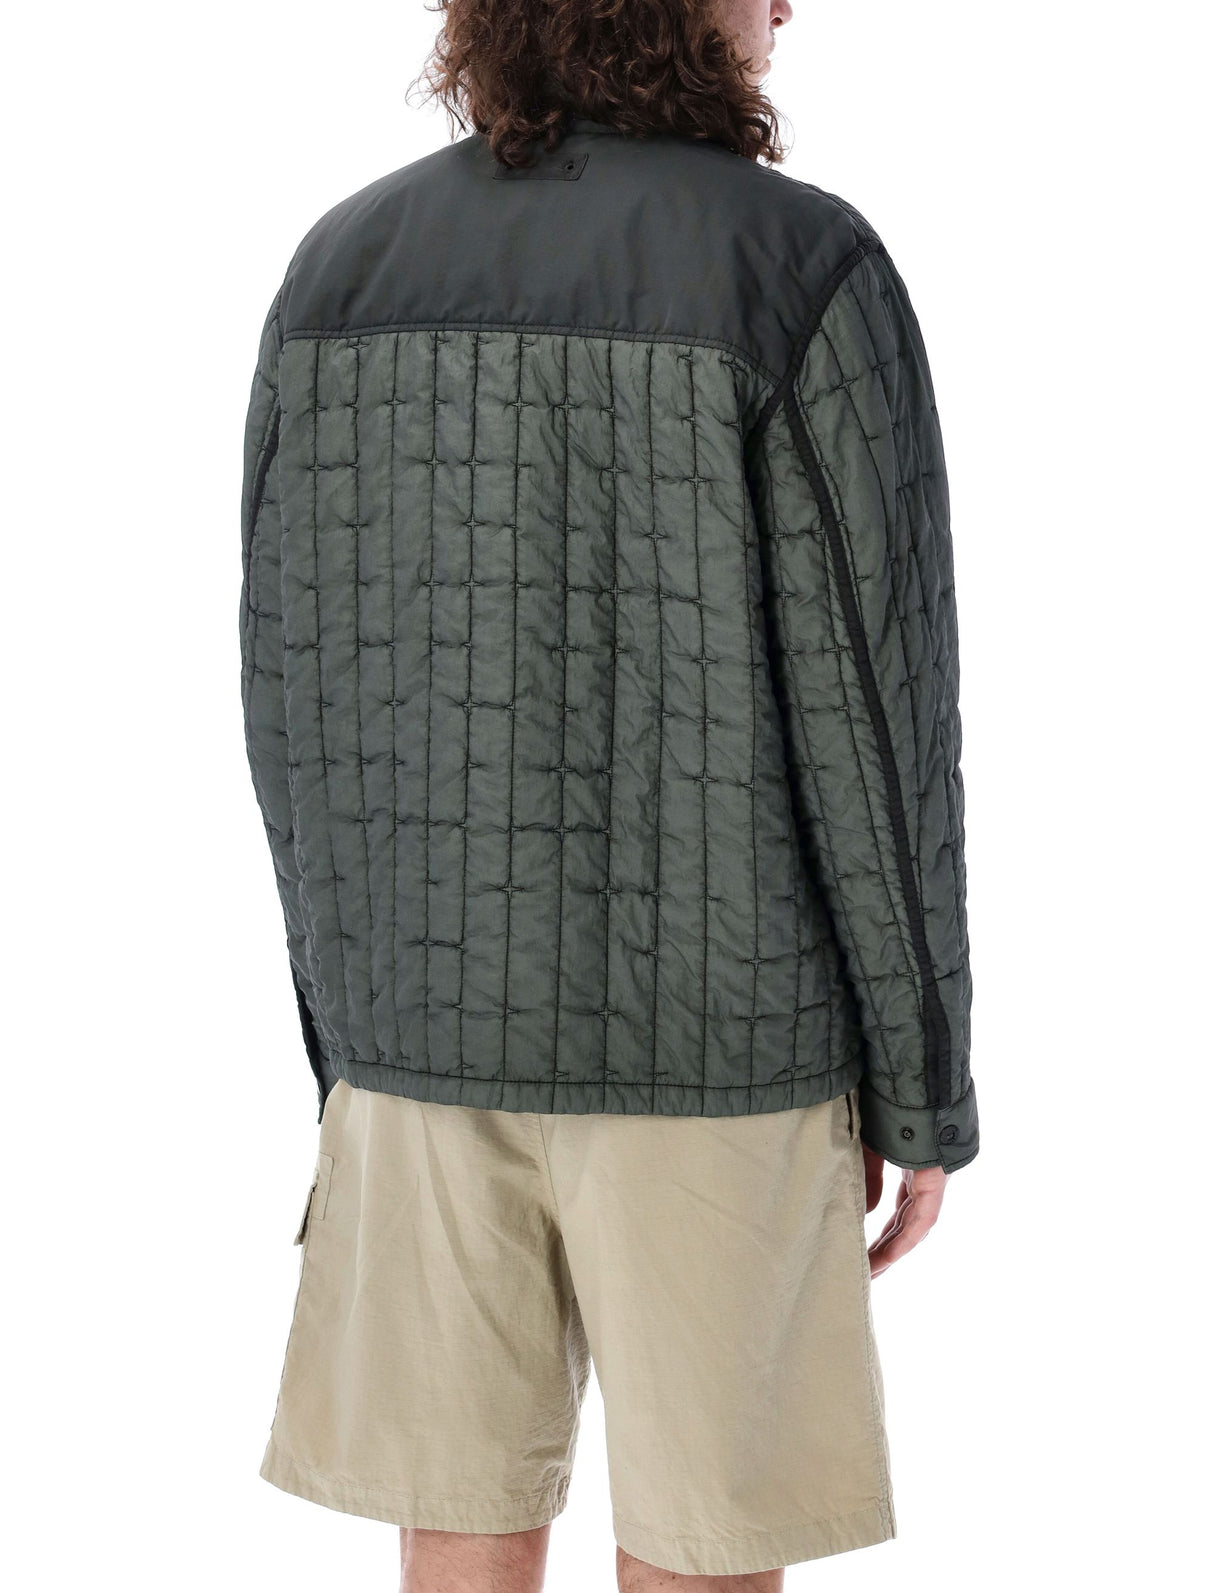 マスクカラーでオリジナリティが光る男性用リーキルトゥッドシャツジャケット by ストーンアイランド